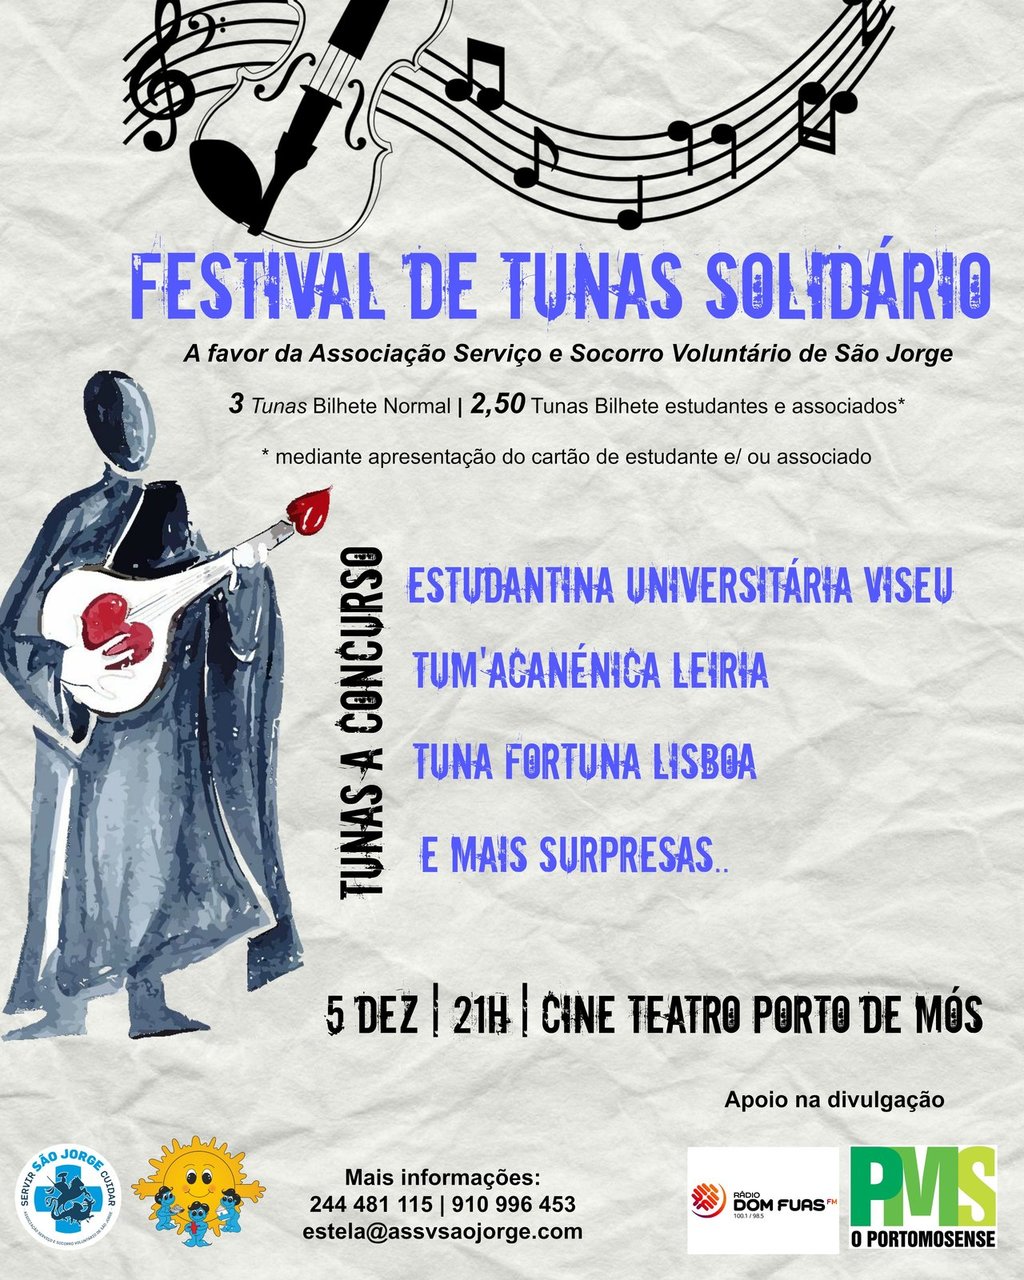 Festival de Tunas Solidário